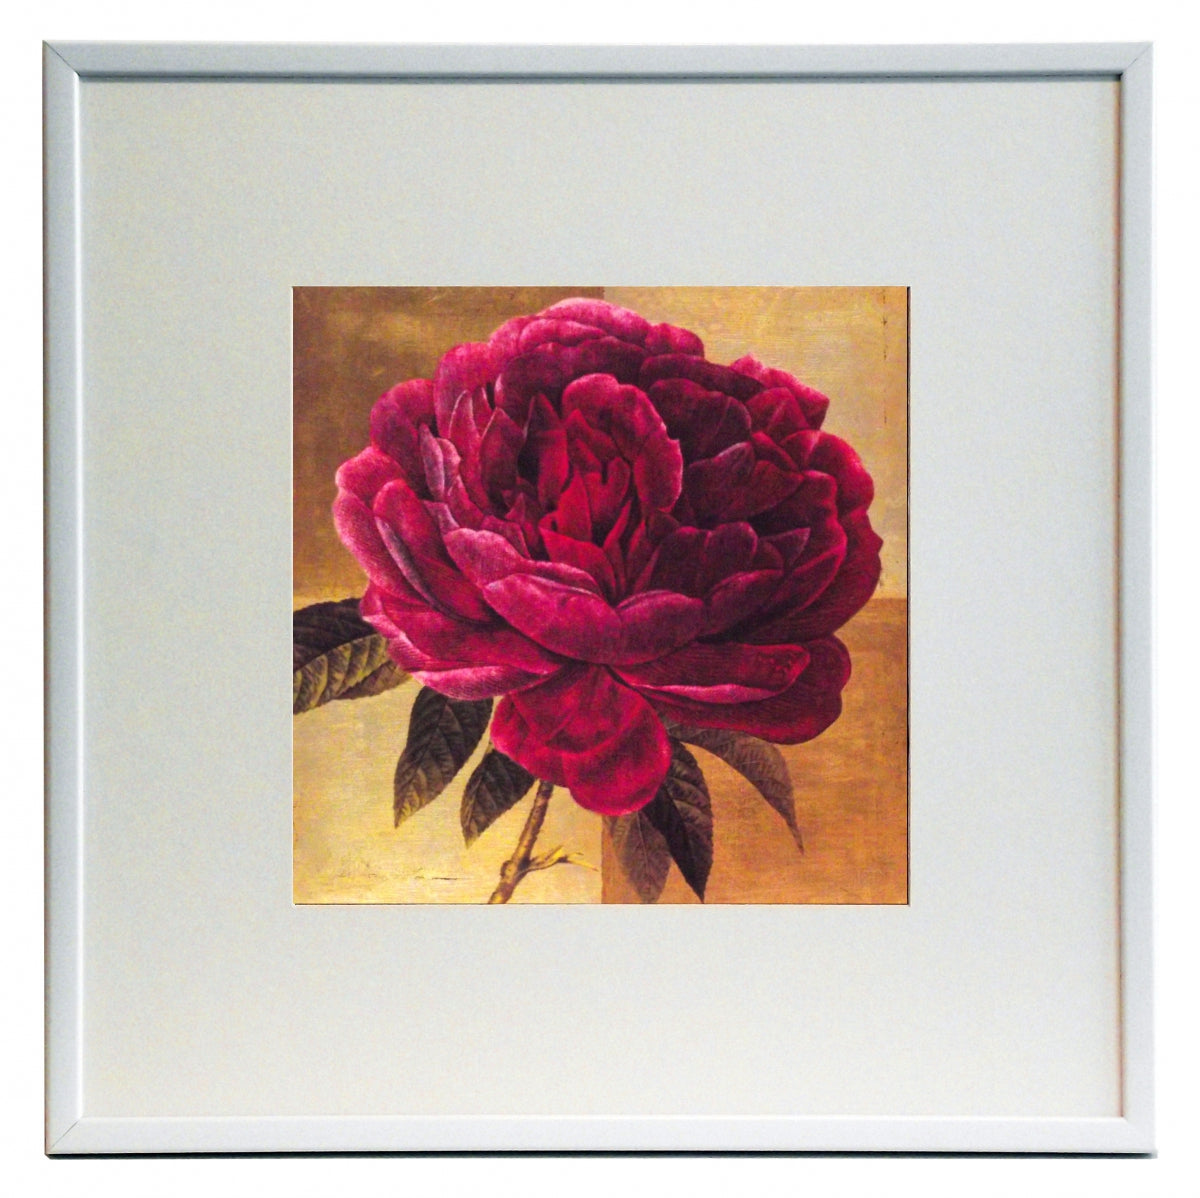 Obraz - Kwiat różowej peonii - reprodukcja w ramie A3784EX 50x50 cm - Obrazy Reprodukcje Ramy | ergopaul.pl